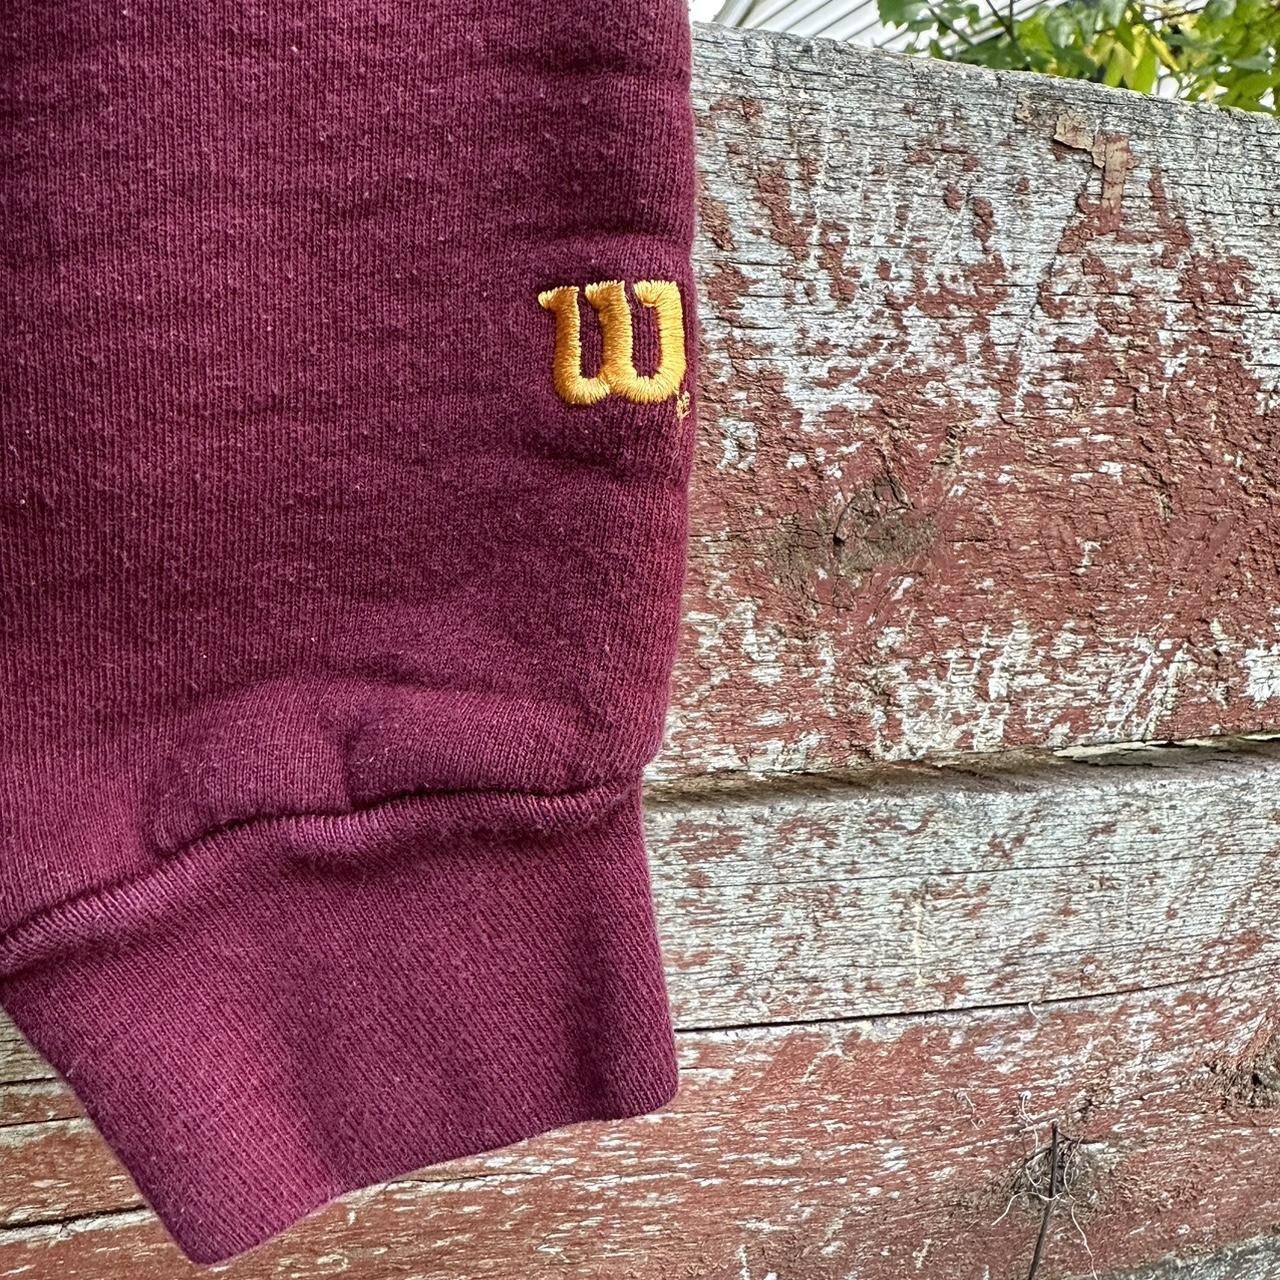 Vintage Wilson Essential Sweatshirt/Tagged... - Depop